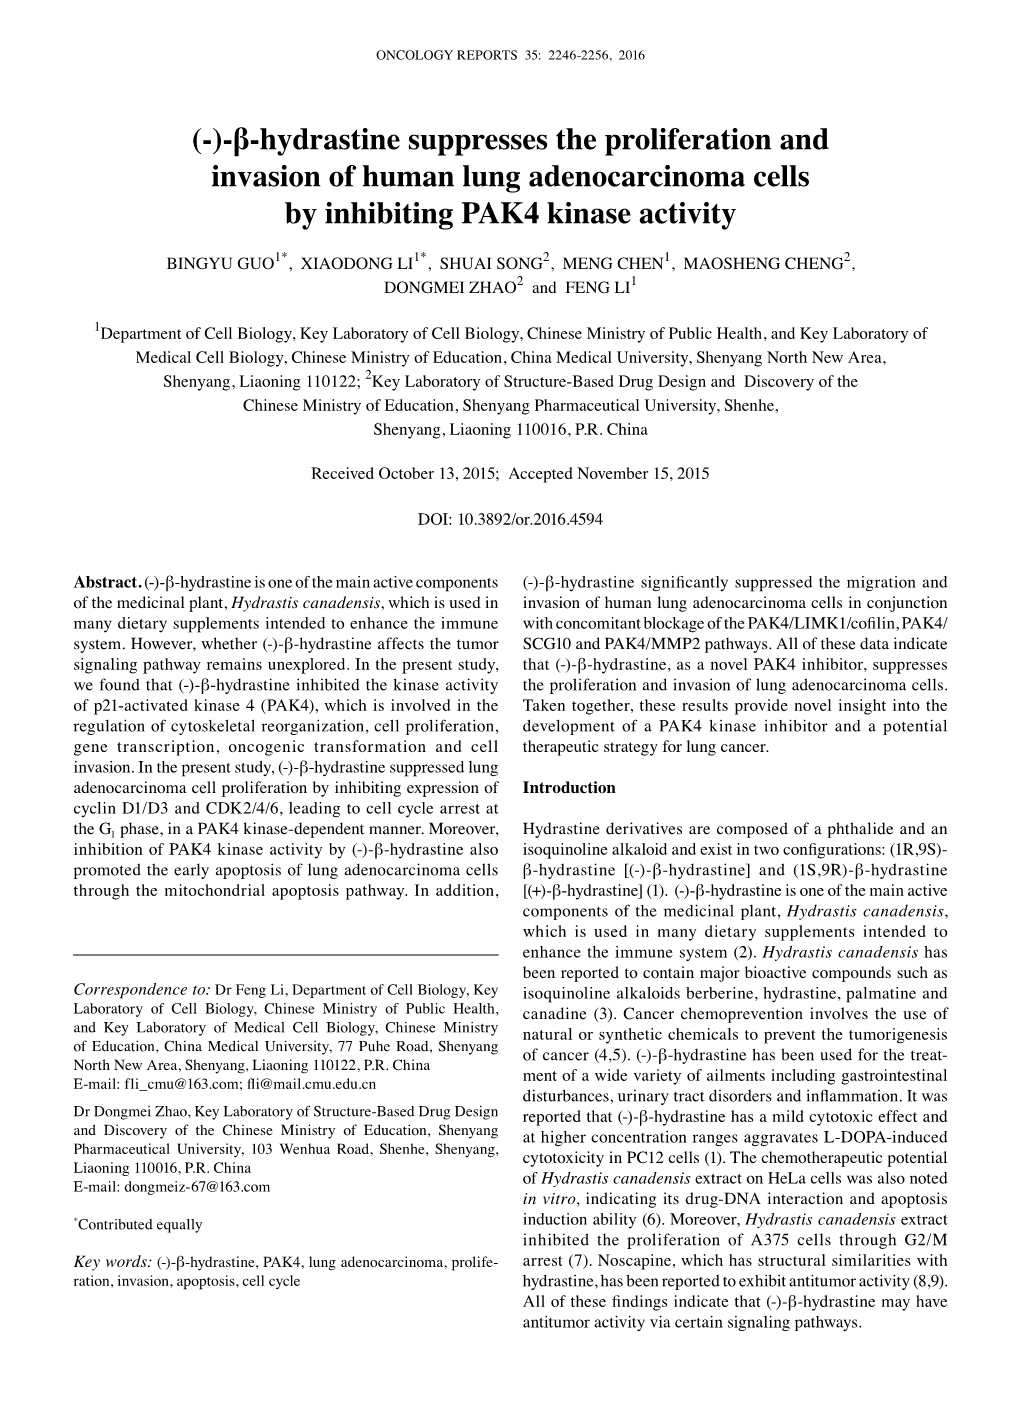 (-)-Β-Hydrastine Suppresses the Proliferation and Invasion of Human Lung Adenocarcinoma Cells by Inhibiting PAK4 Kinase Activity